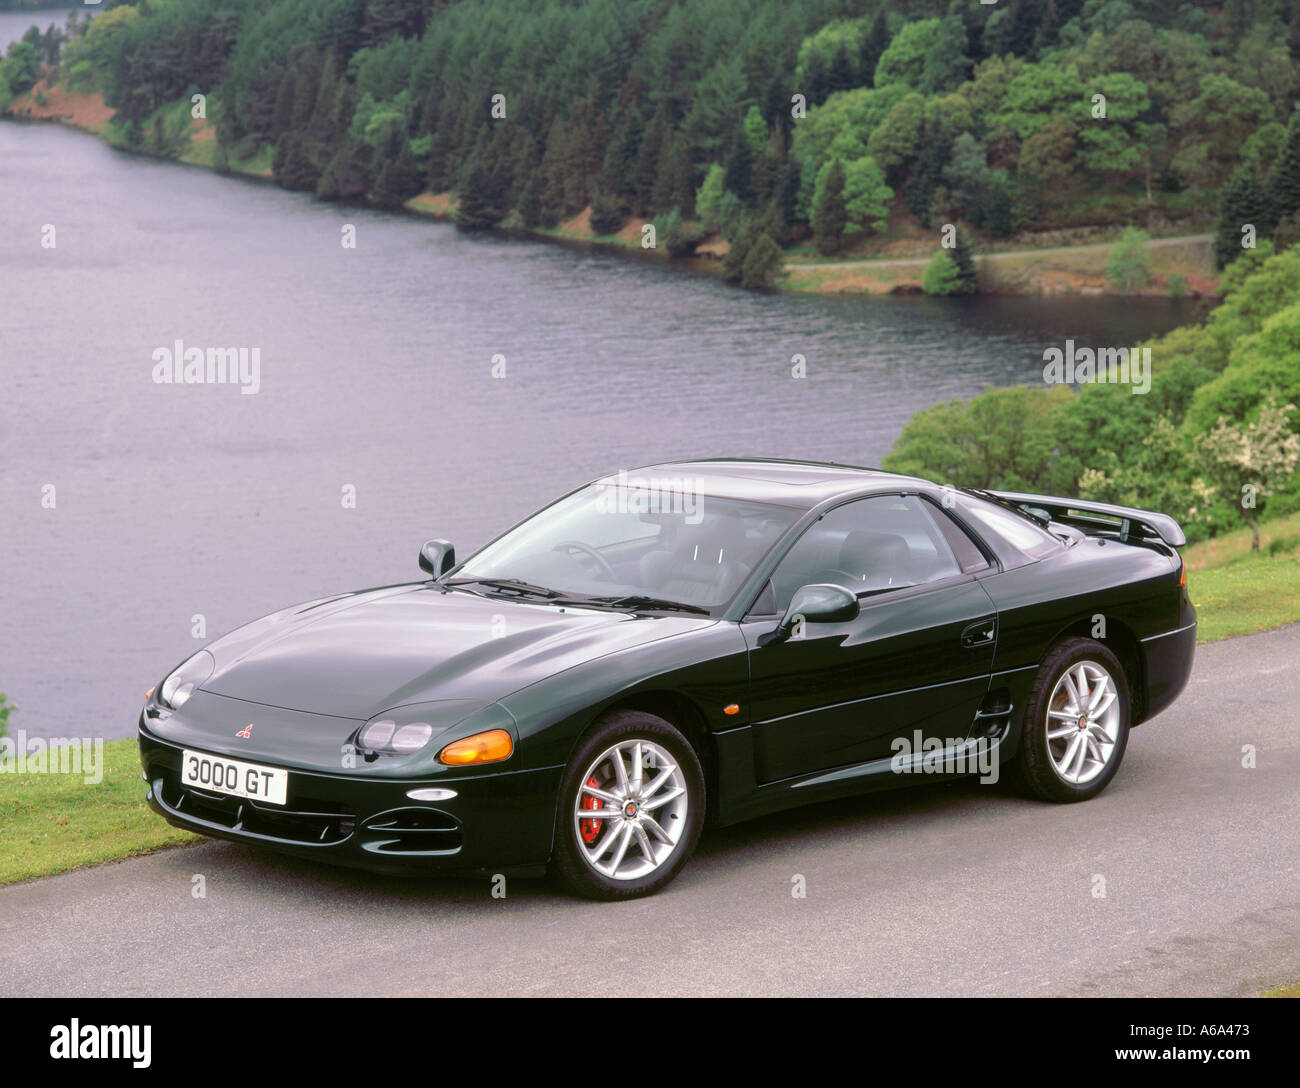 1999 Mitsubishi 3000 GT Stock Photo